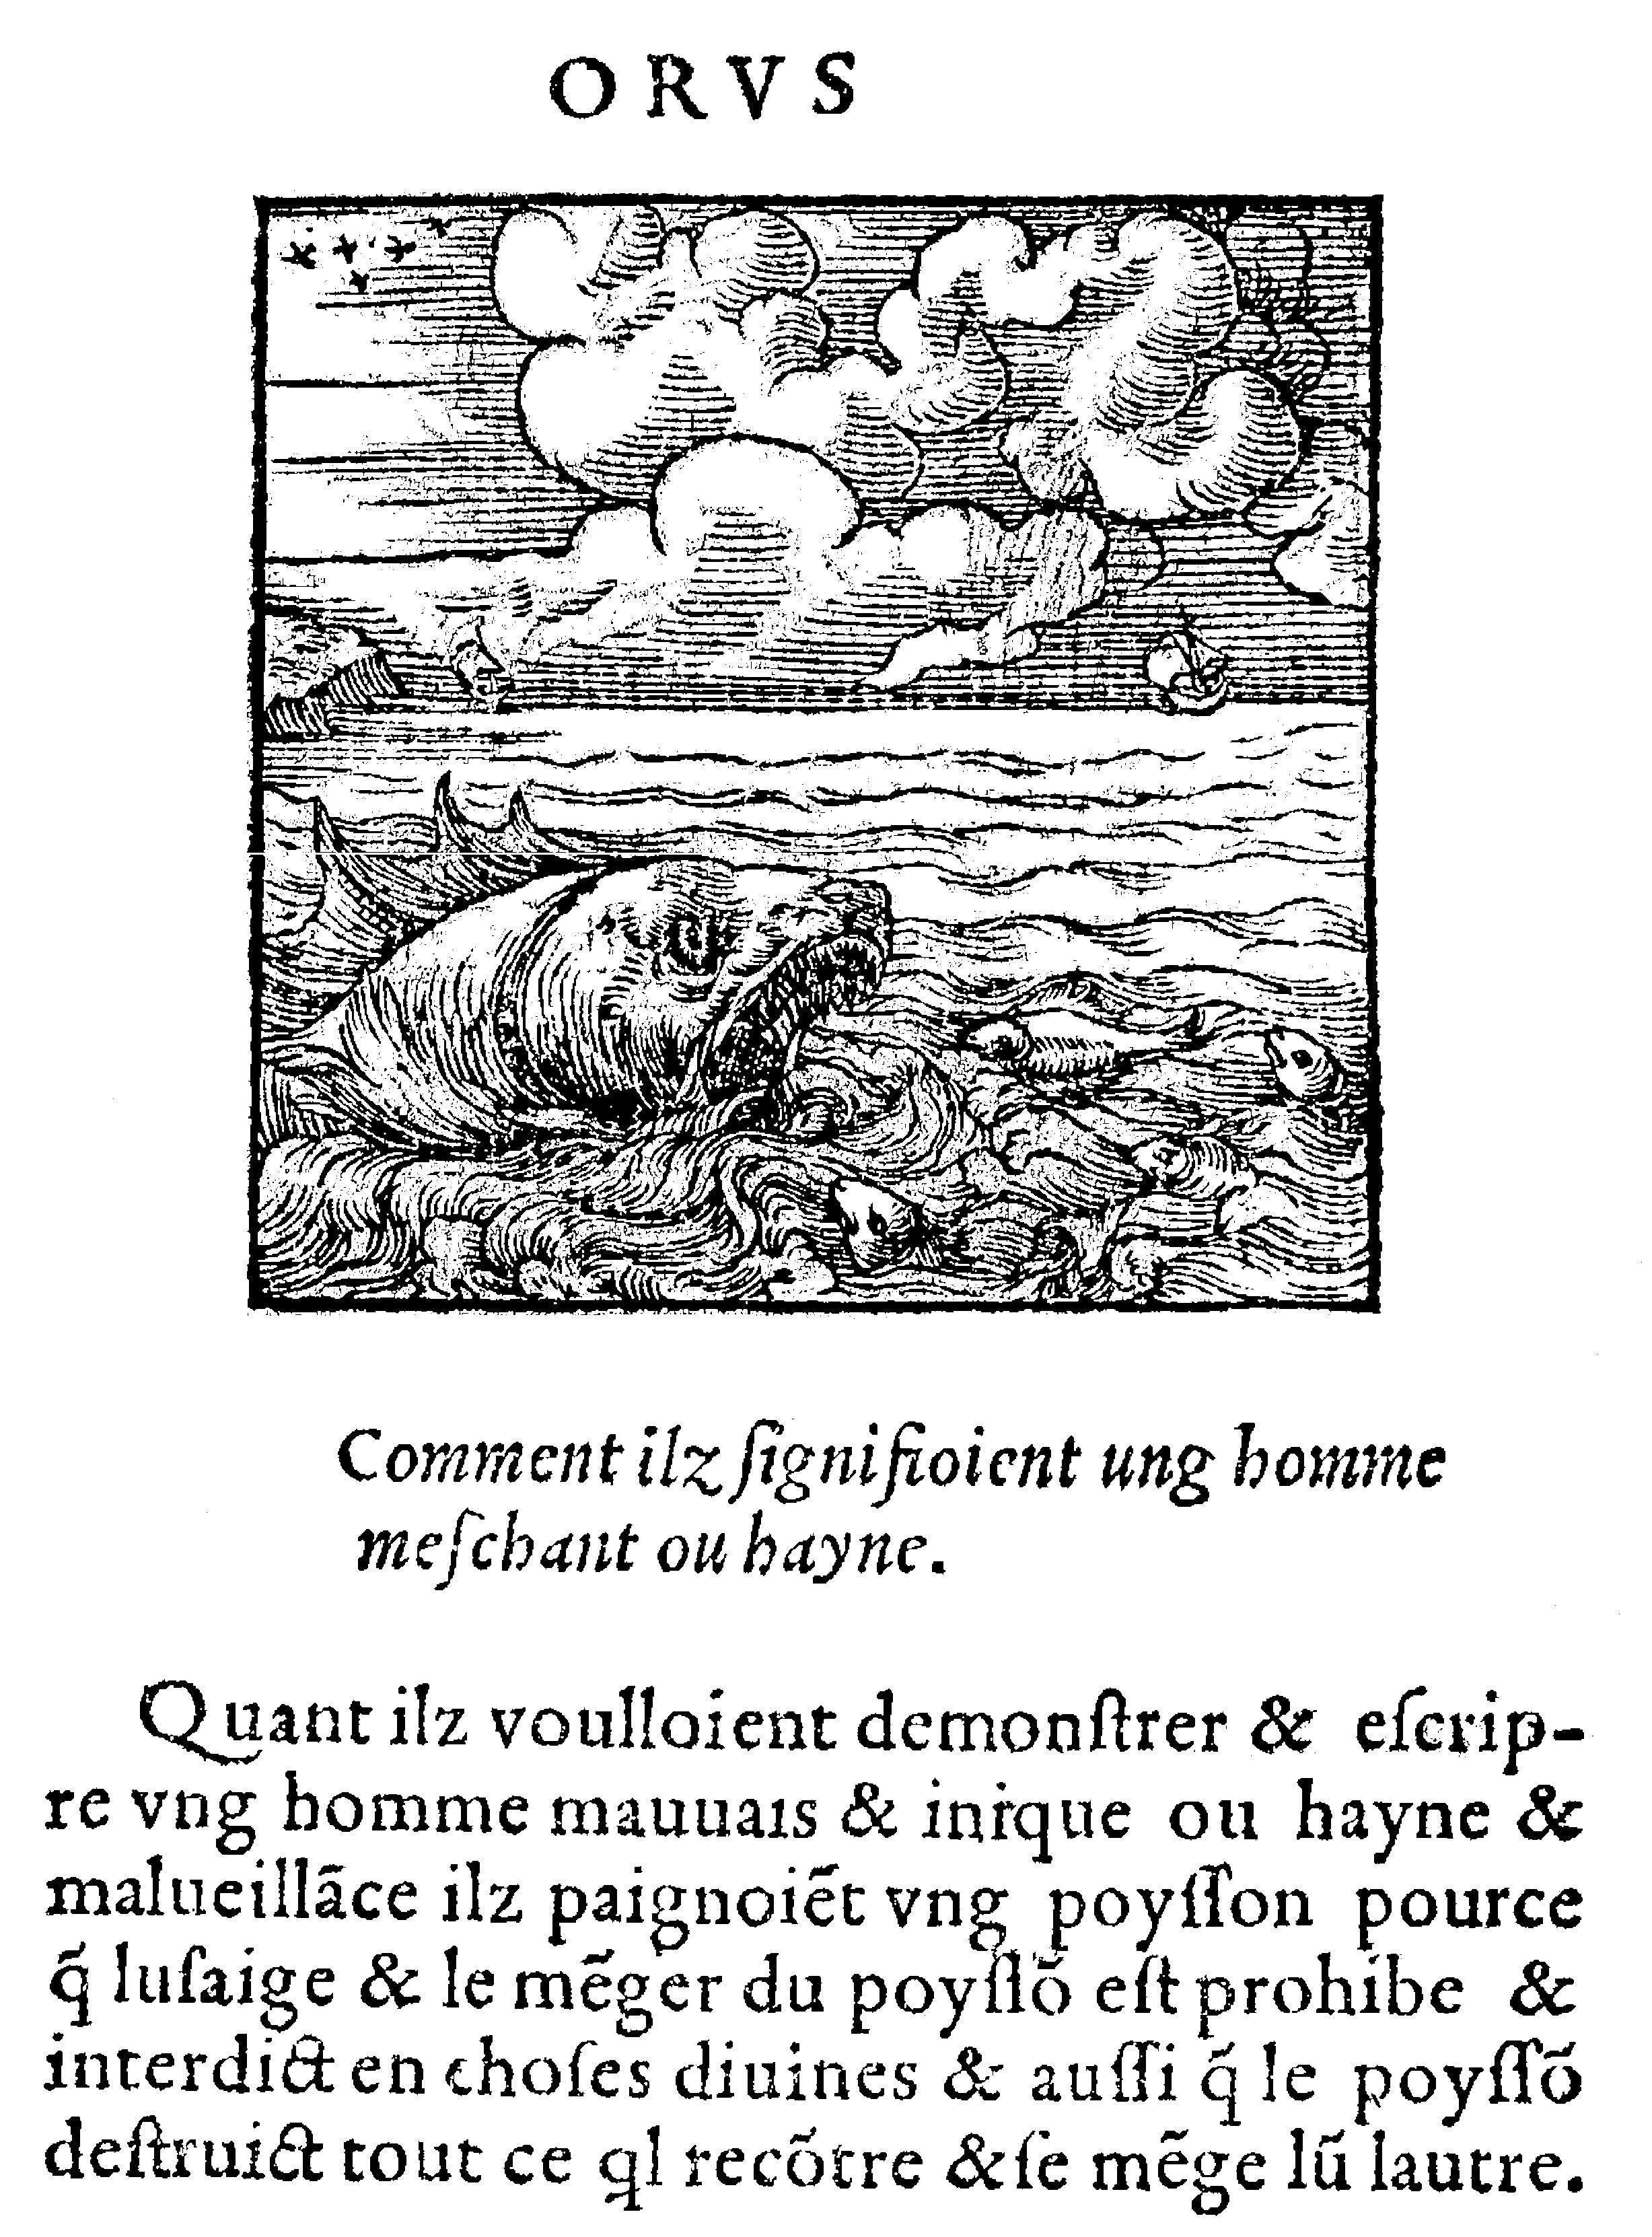 Le Poysson, d'après Horapollon, éd. Kerver, 1543